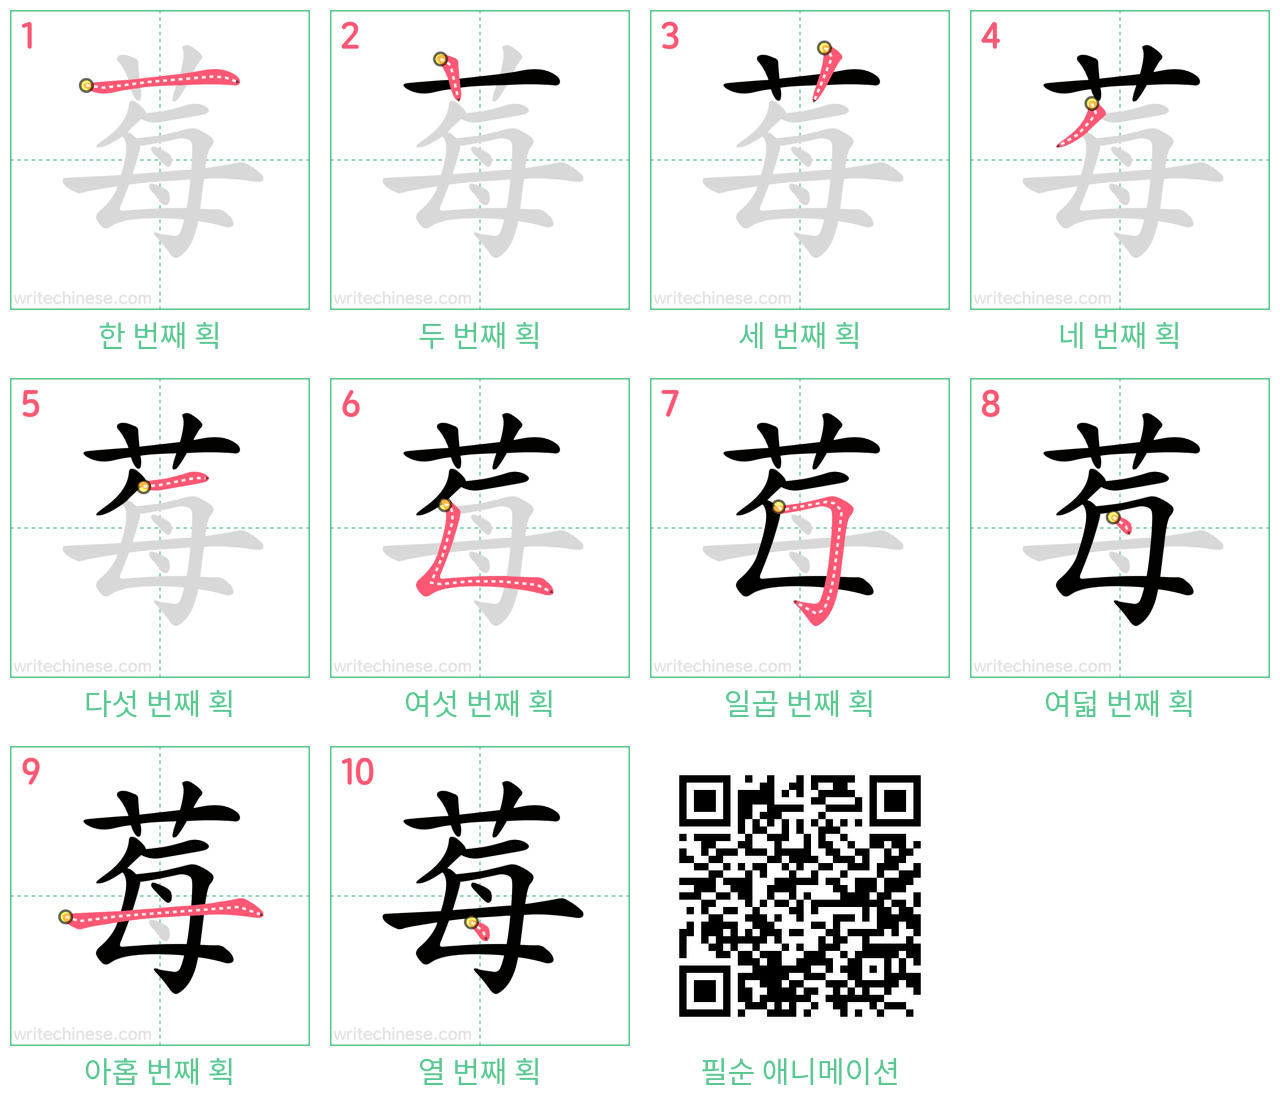 莓 step-by-step stroke order diagrams